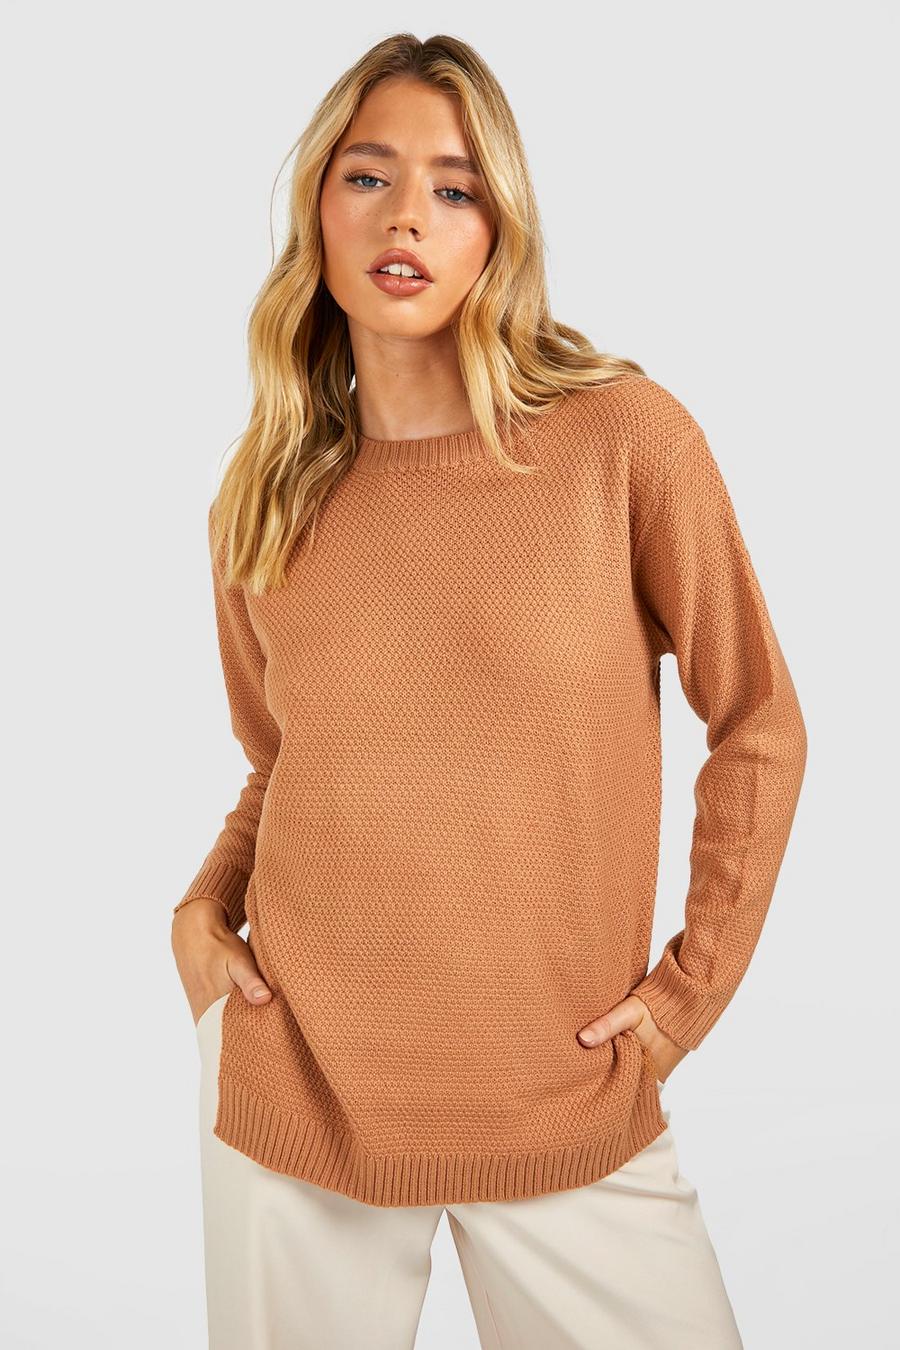 Tan brown Round Neck Lightweight Sweater